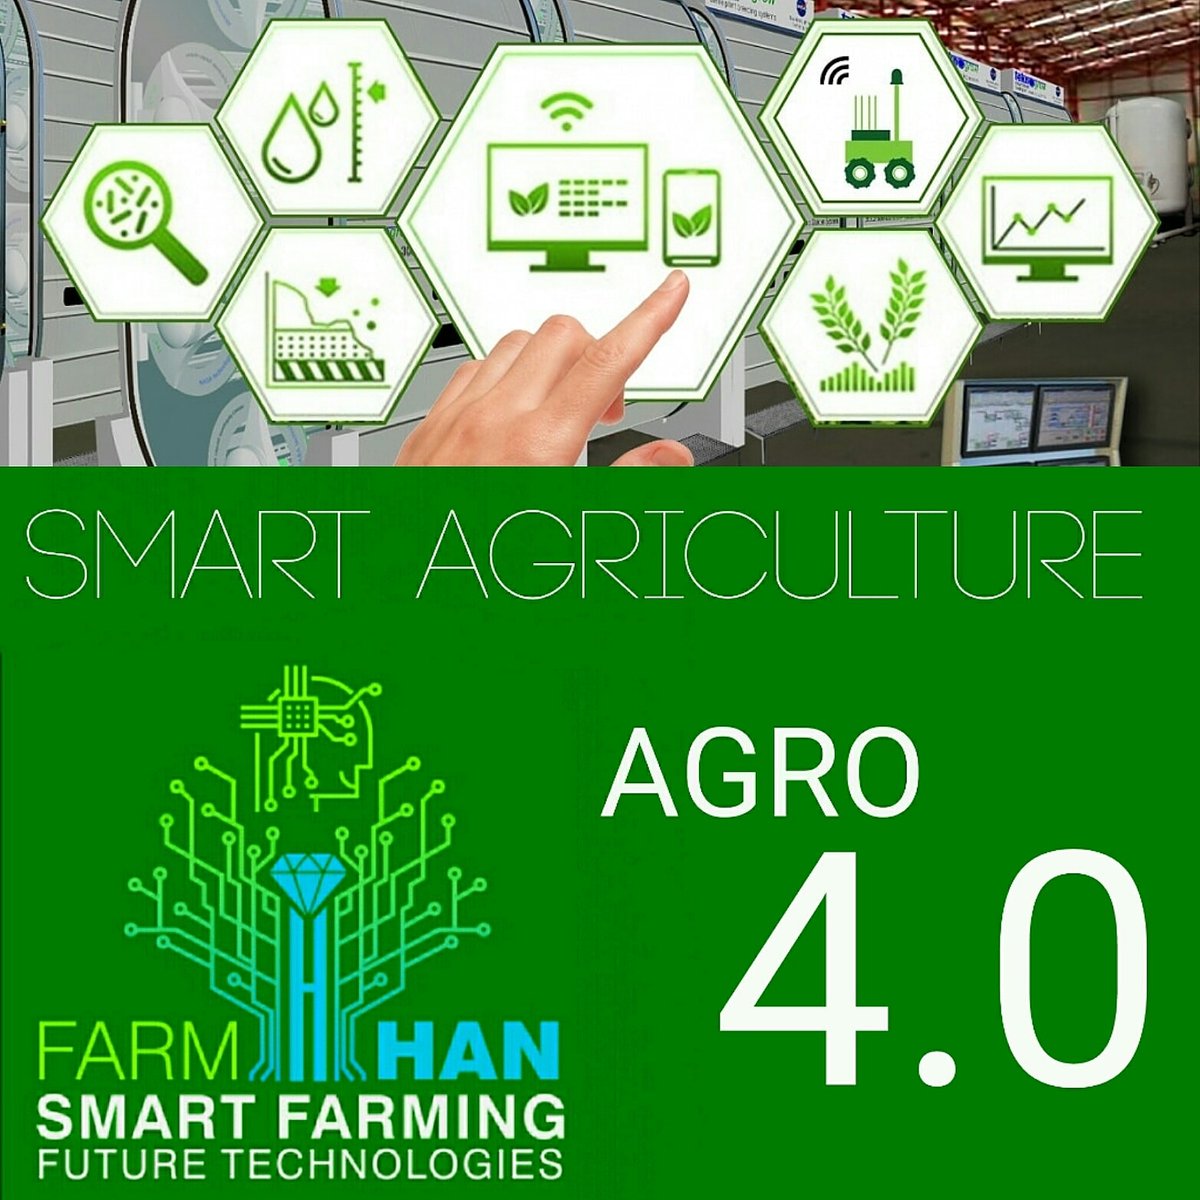 Tarımda reform..!
Geleceğin akıllı tarım teknolojisi... 
AGRO 4.0
TARIM 4.0

TeknoGrow Kentsel Tarım Tesisleri, Tarım 4.0 akıllı tarım teknolojisi kullanır. 
farmhan.com

#agro4.0 #tarım4.0 #akıllıtarım #urbangrowing #sera #growing #bitkifabrika  #nadirdülgeroğlu